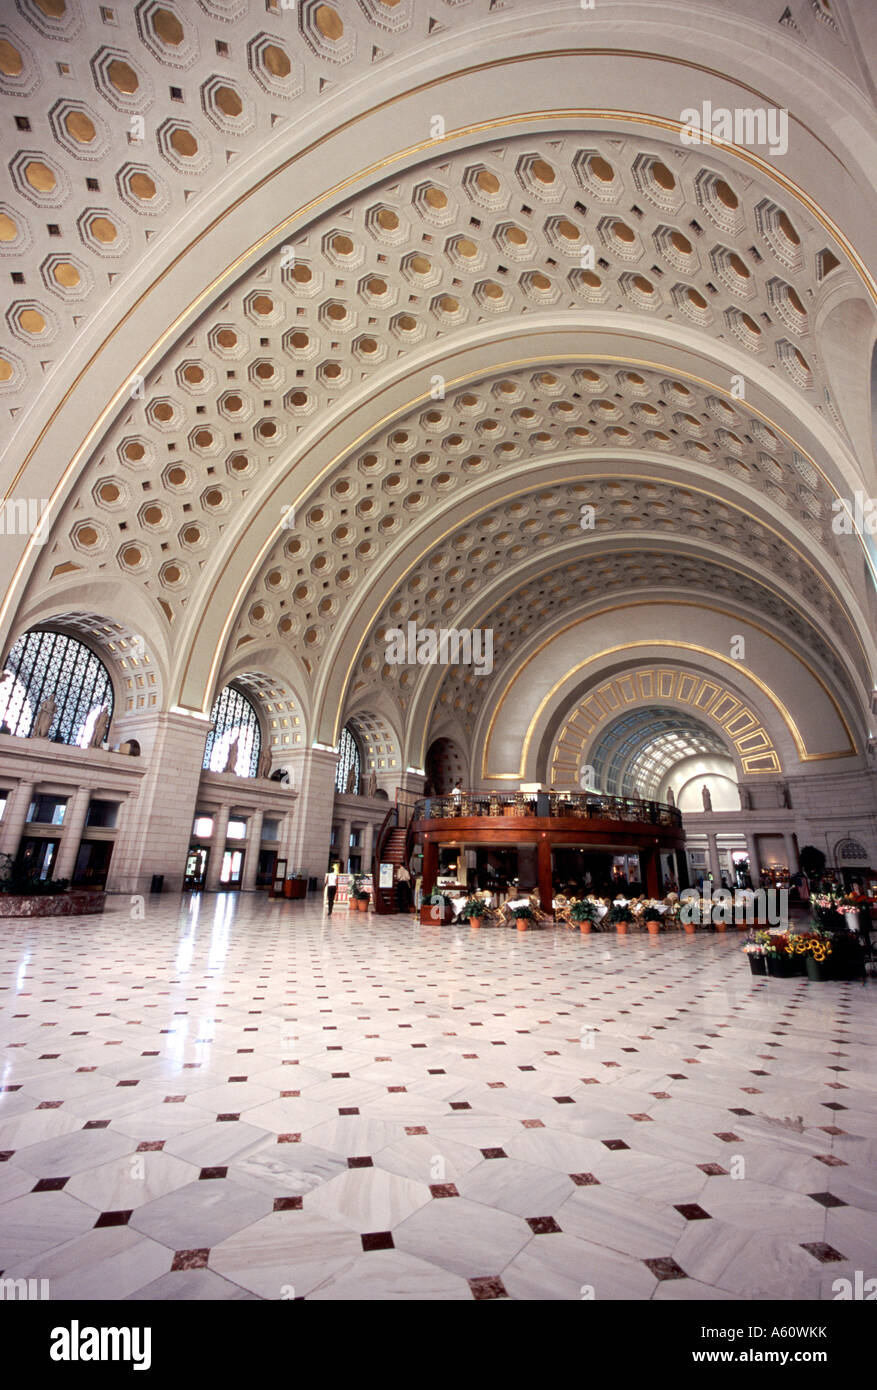 Union Station, Washington, D.C. Stock Photo